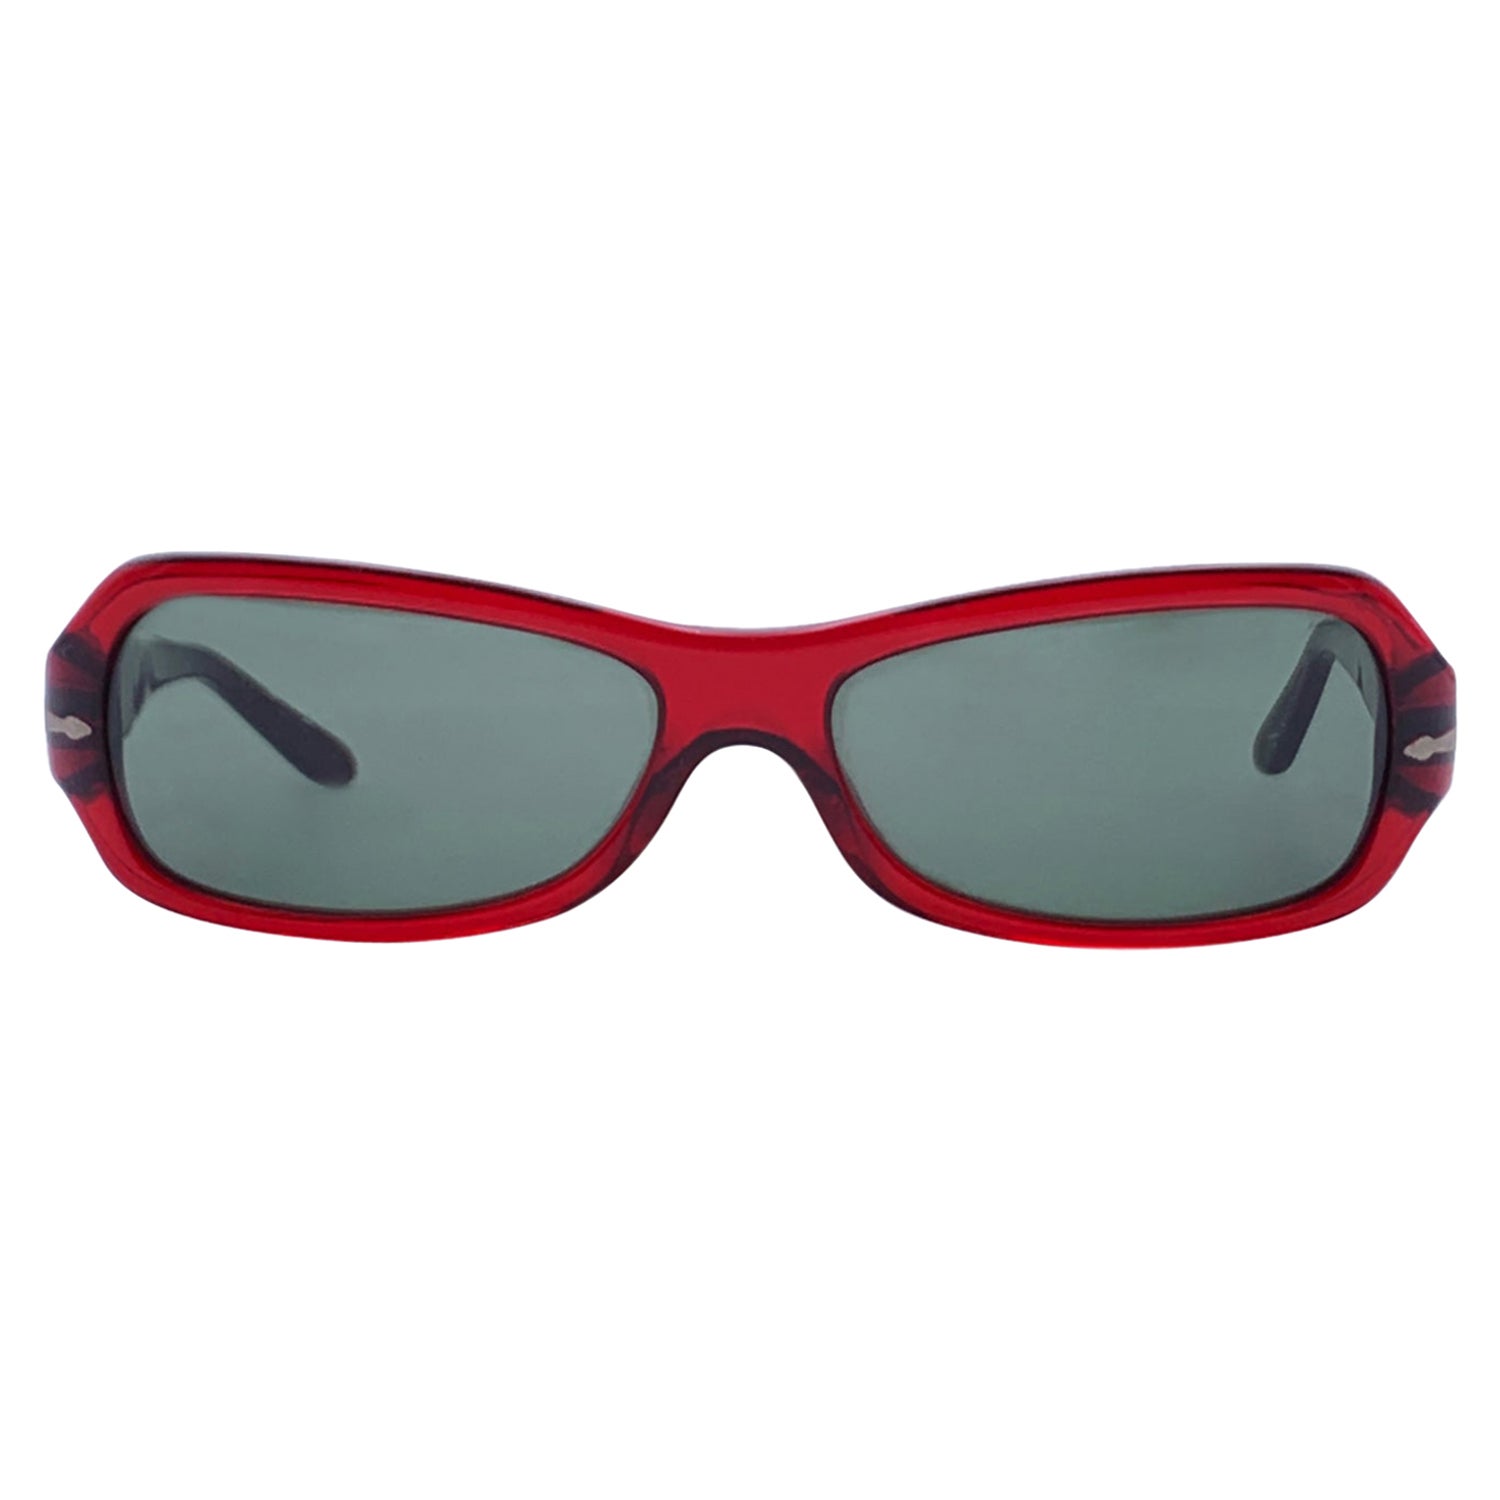 Persol Ratti Meflecto Red Acetate Sunglasses 2807-S 56/15 135 mm